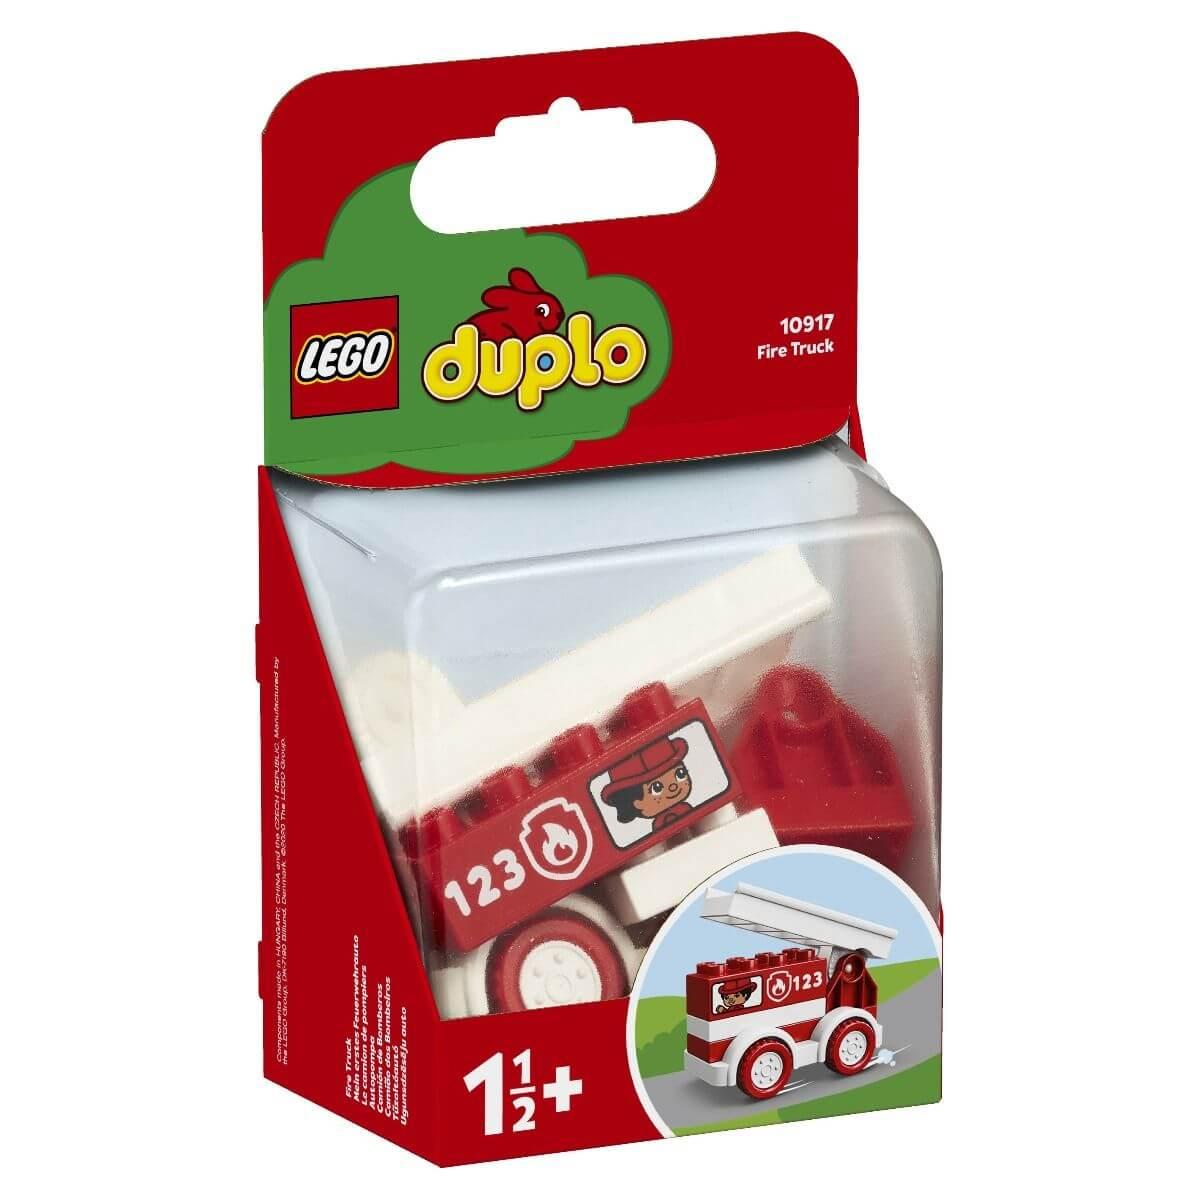 LEGO: Пожарная машина DUPLO 10917